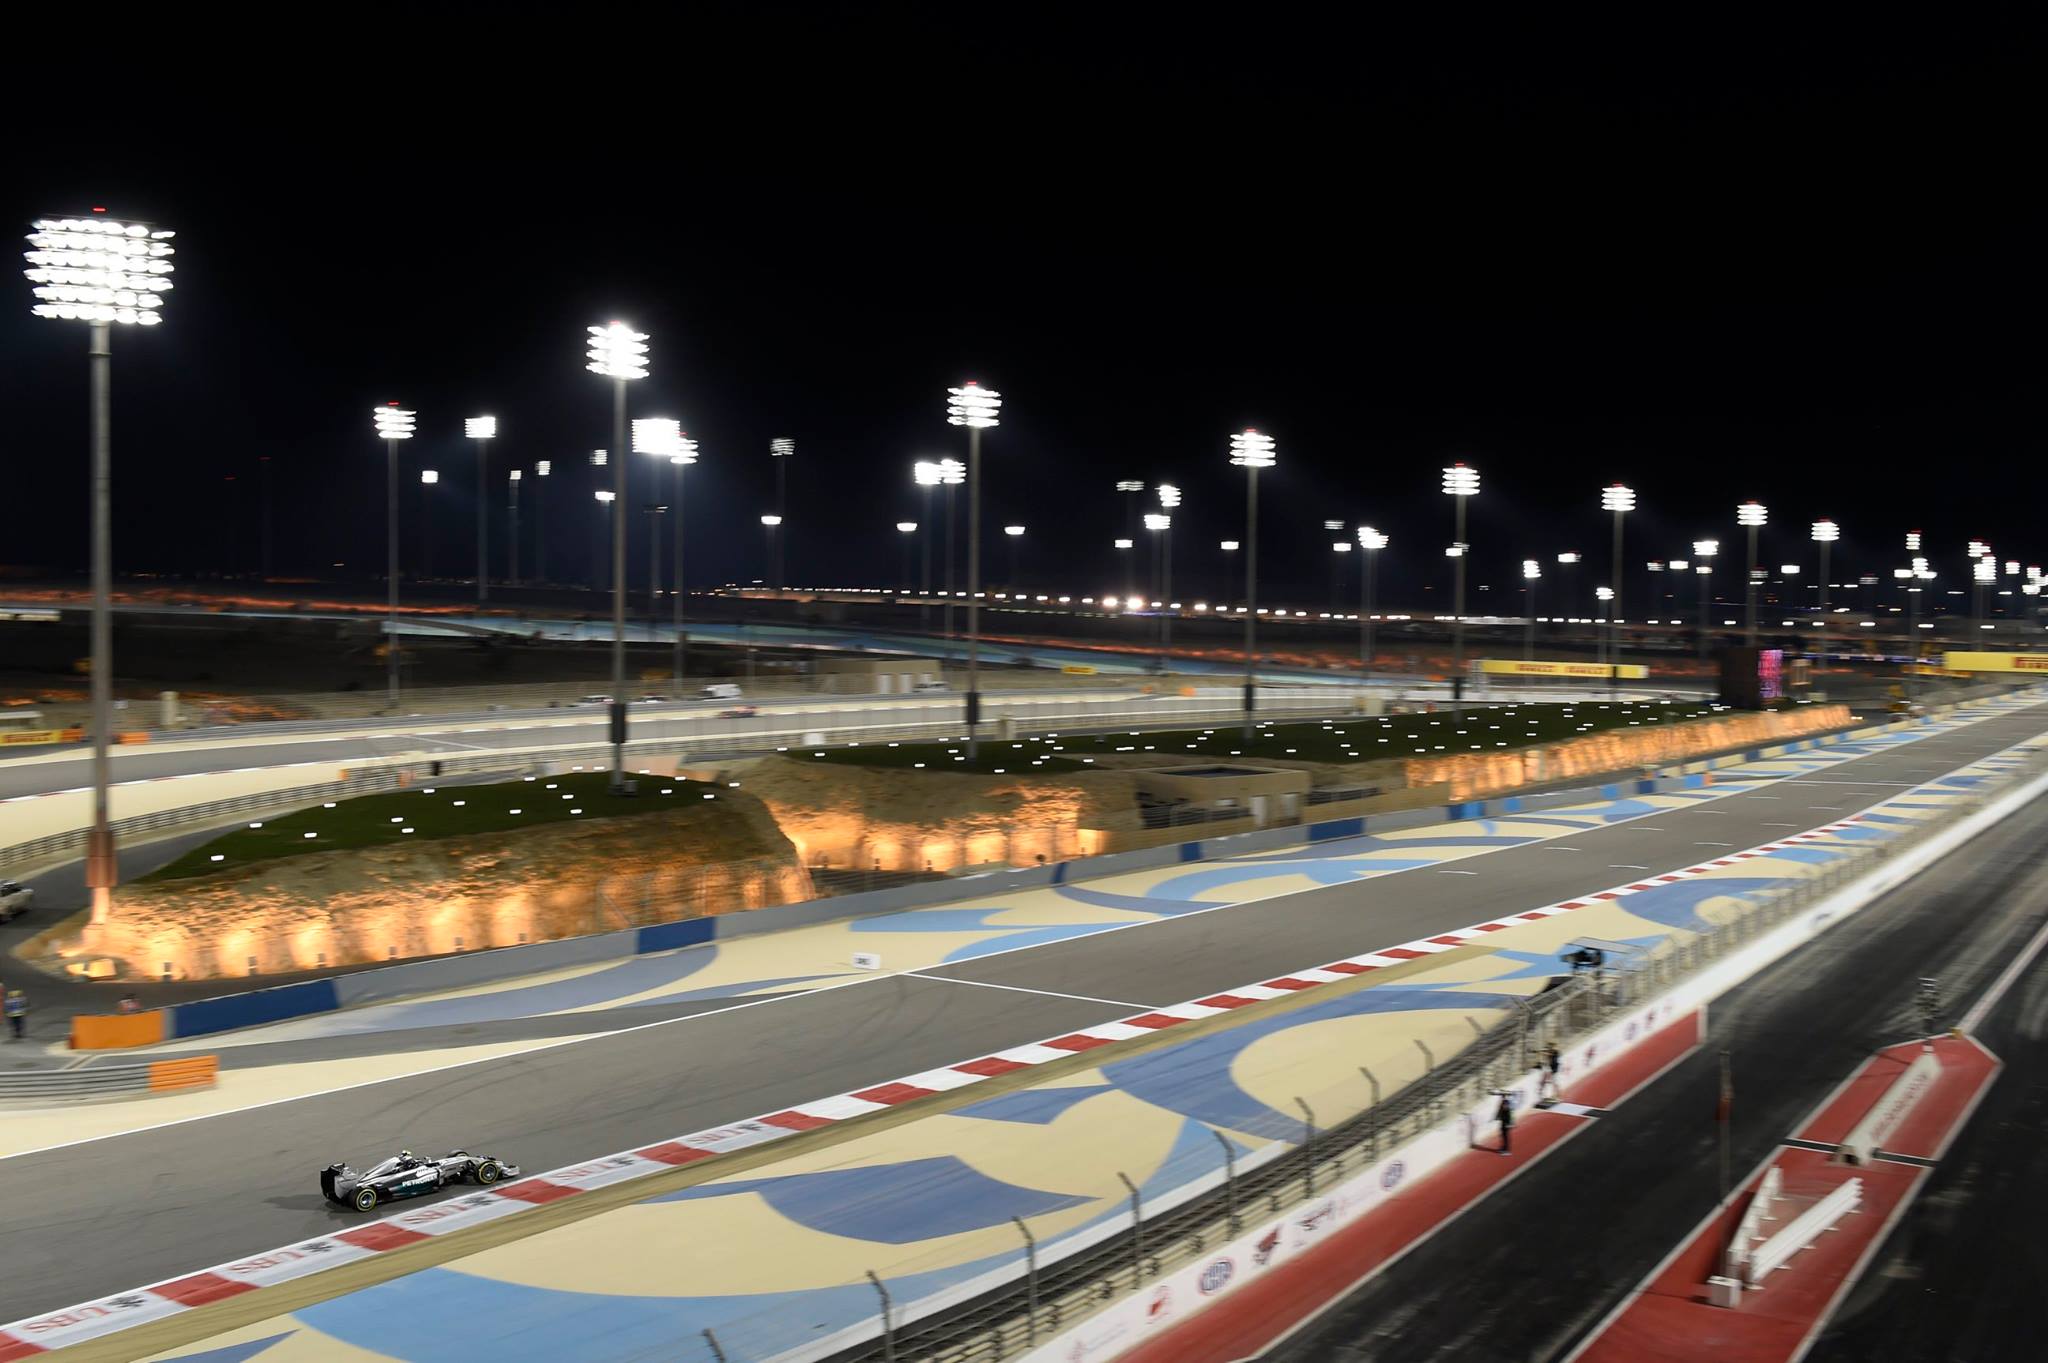 Calor y arena en el Gran Premio de Bahrain